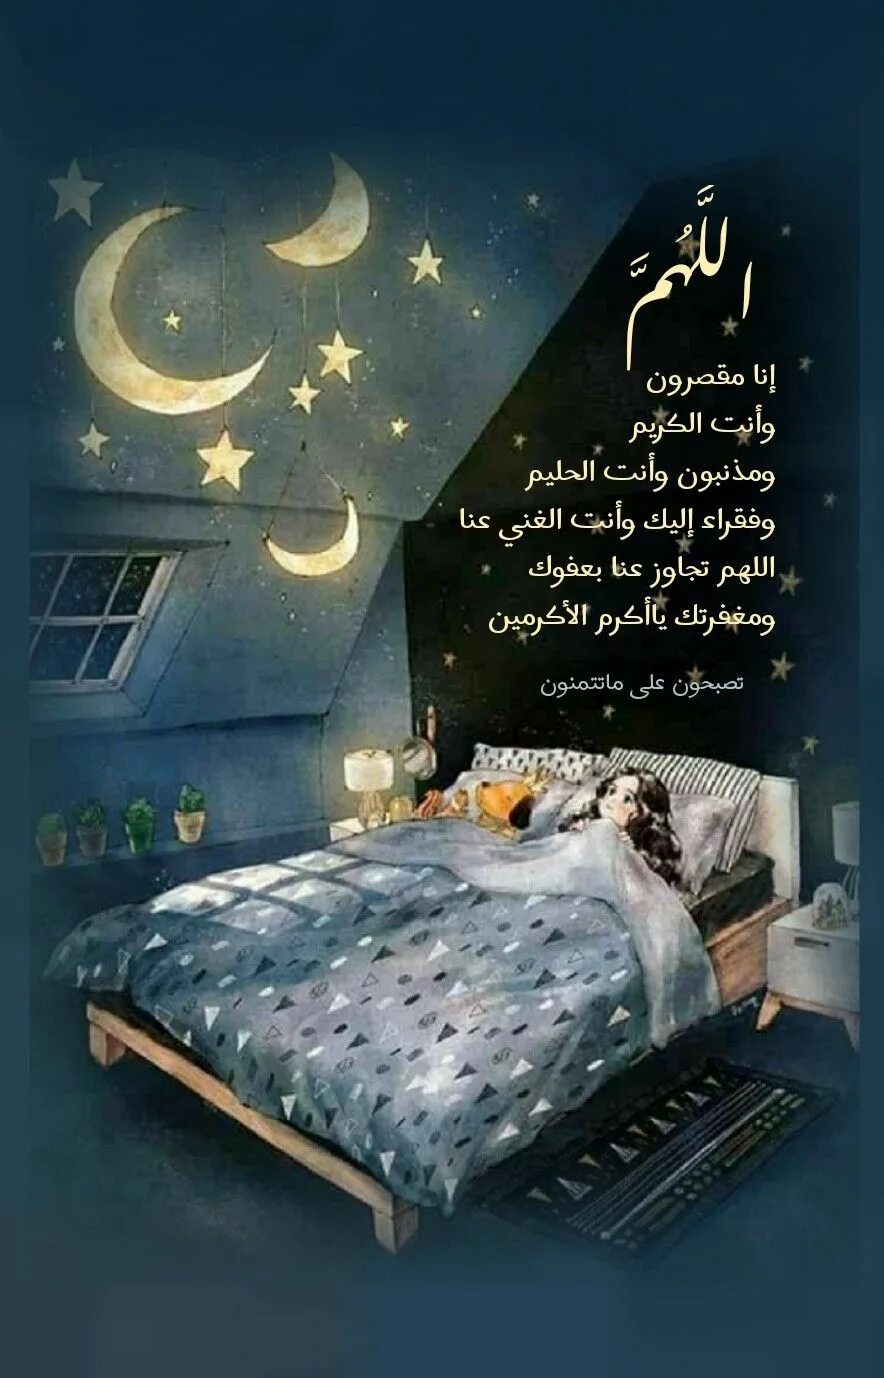 Арабский во сне. Спокойной ночи на арабском. Доброй ночи на арабском языке. Ночь сон. Спокойной ночи на арабском языке.